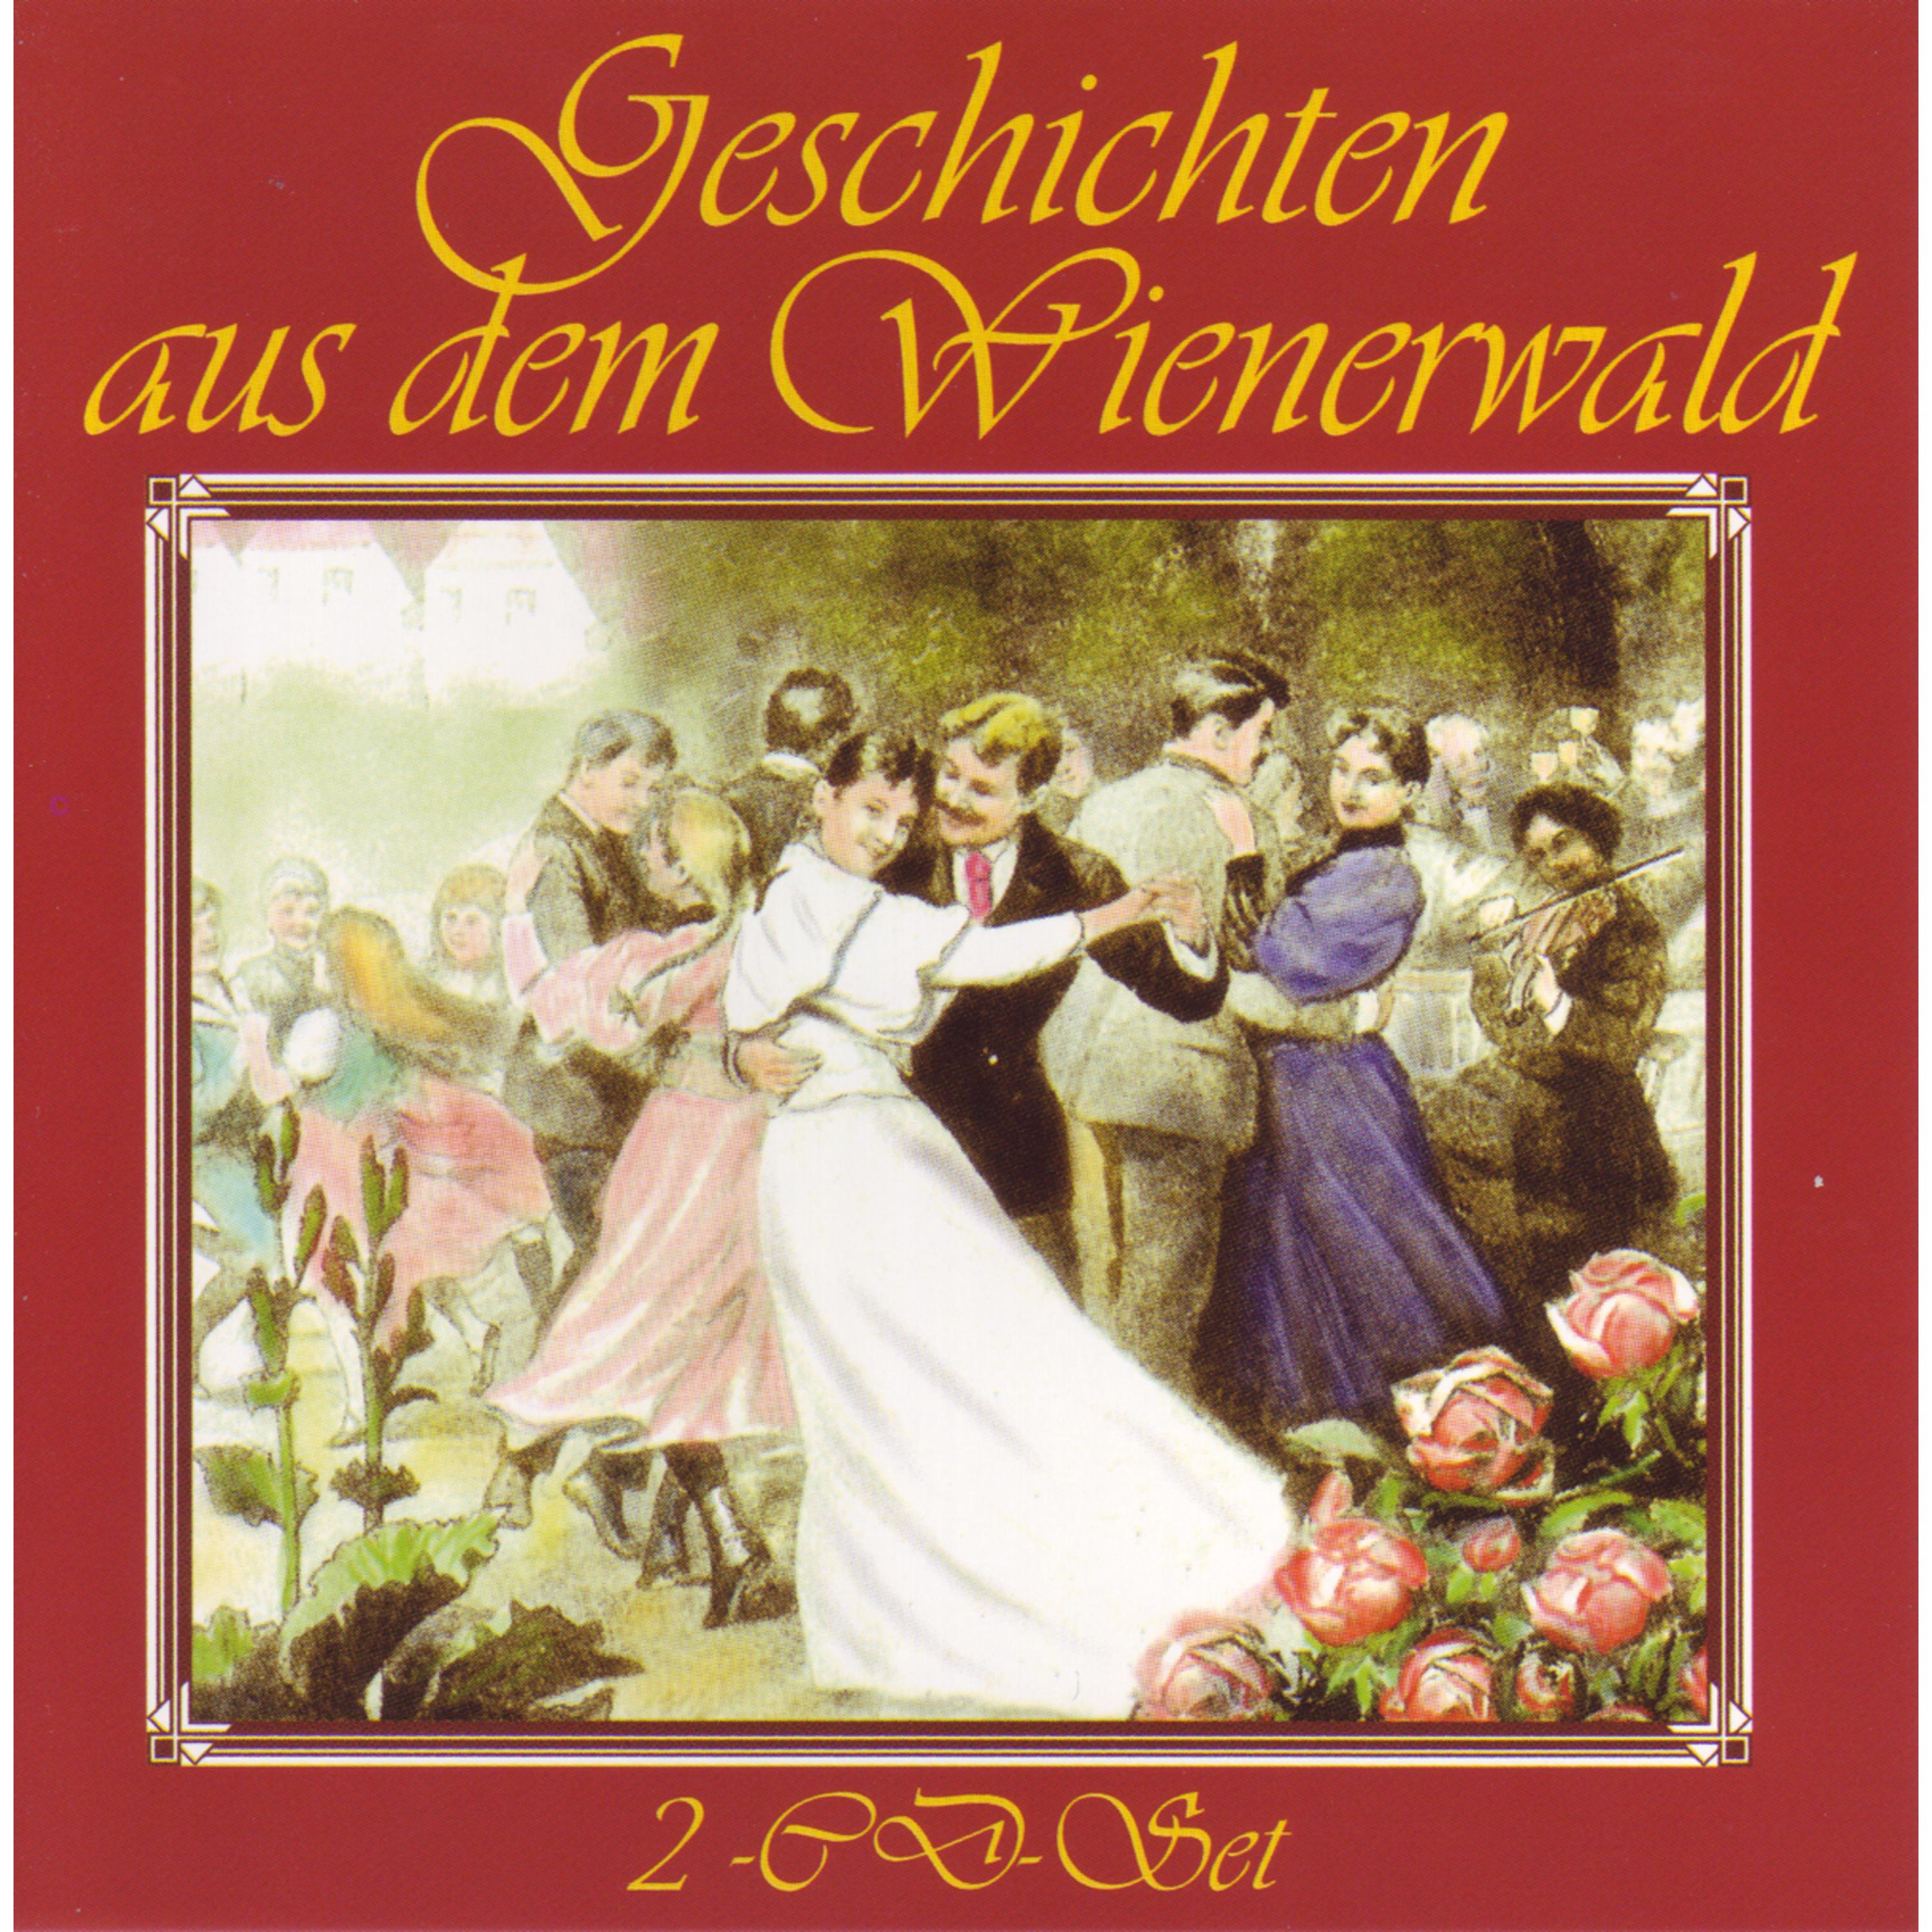 Geschichten aus dem Wienerwald, Op. 325